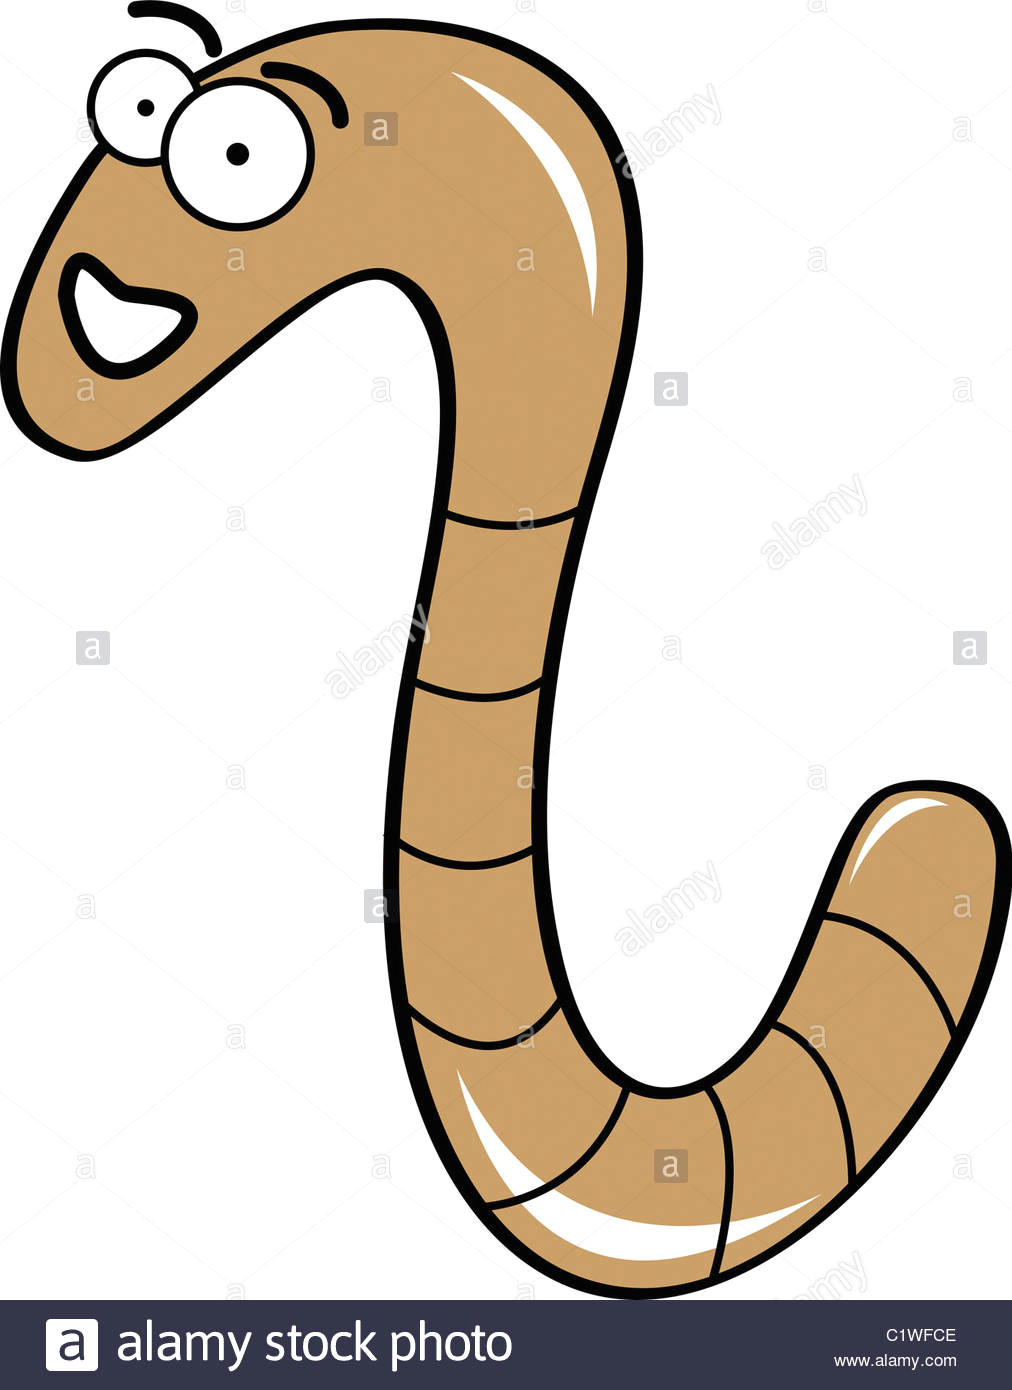 Drawing Of A Cartoon Worm Worm Cartoon Stock Photos Worm Cartoon Stock Images Alamy